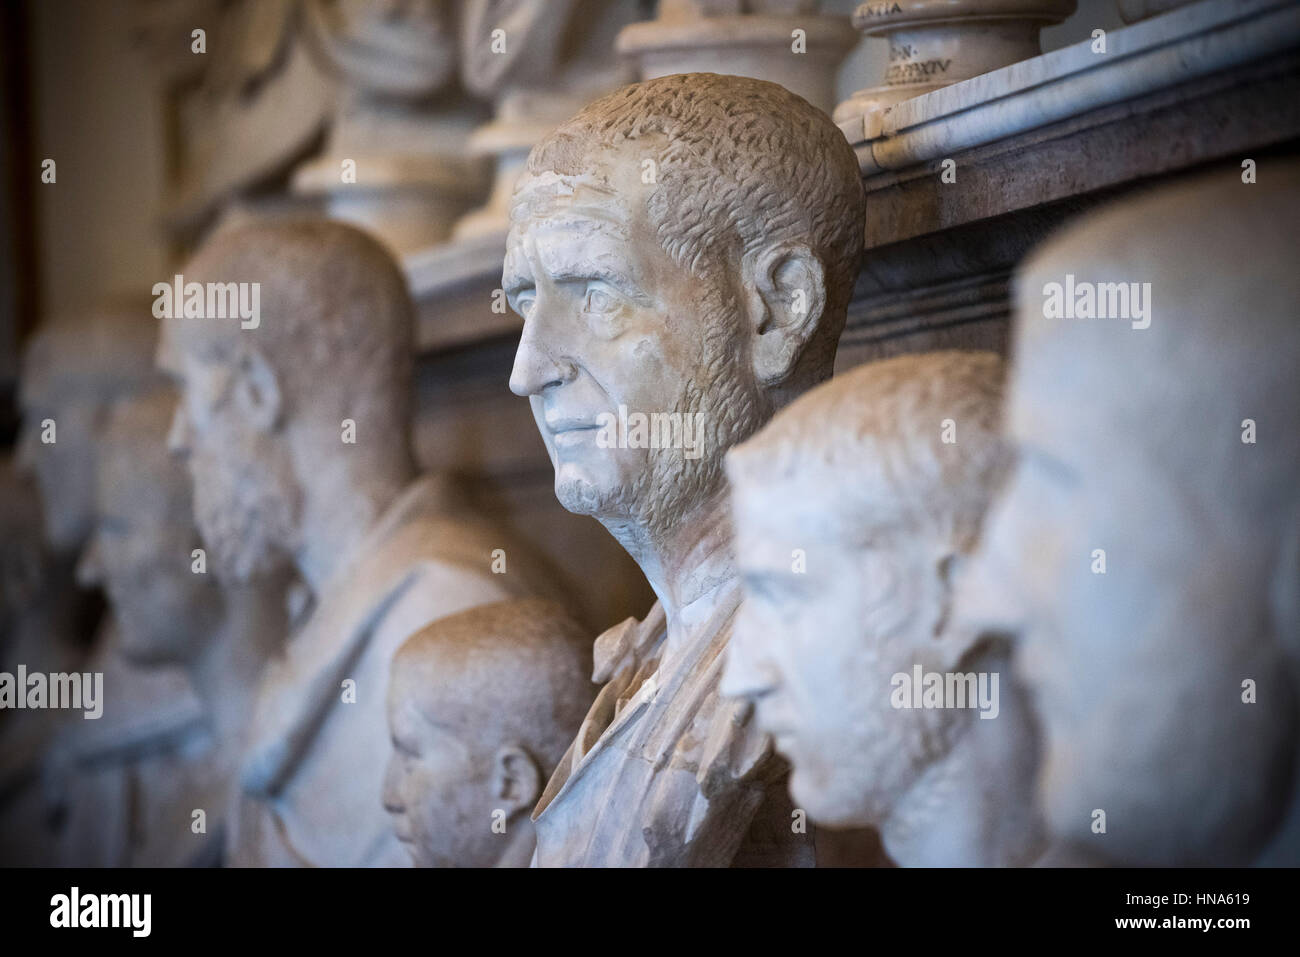 Roma. L'Italia. Busto di imperatore romano Traiano Decio (ca. 201-251), Museo Capitolino. Musei Capitolini. Foto Stock